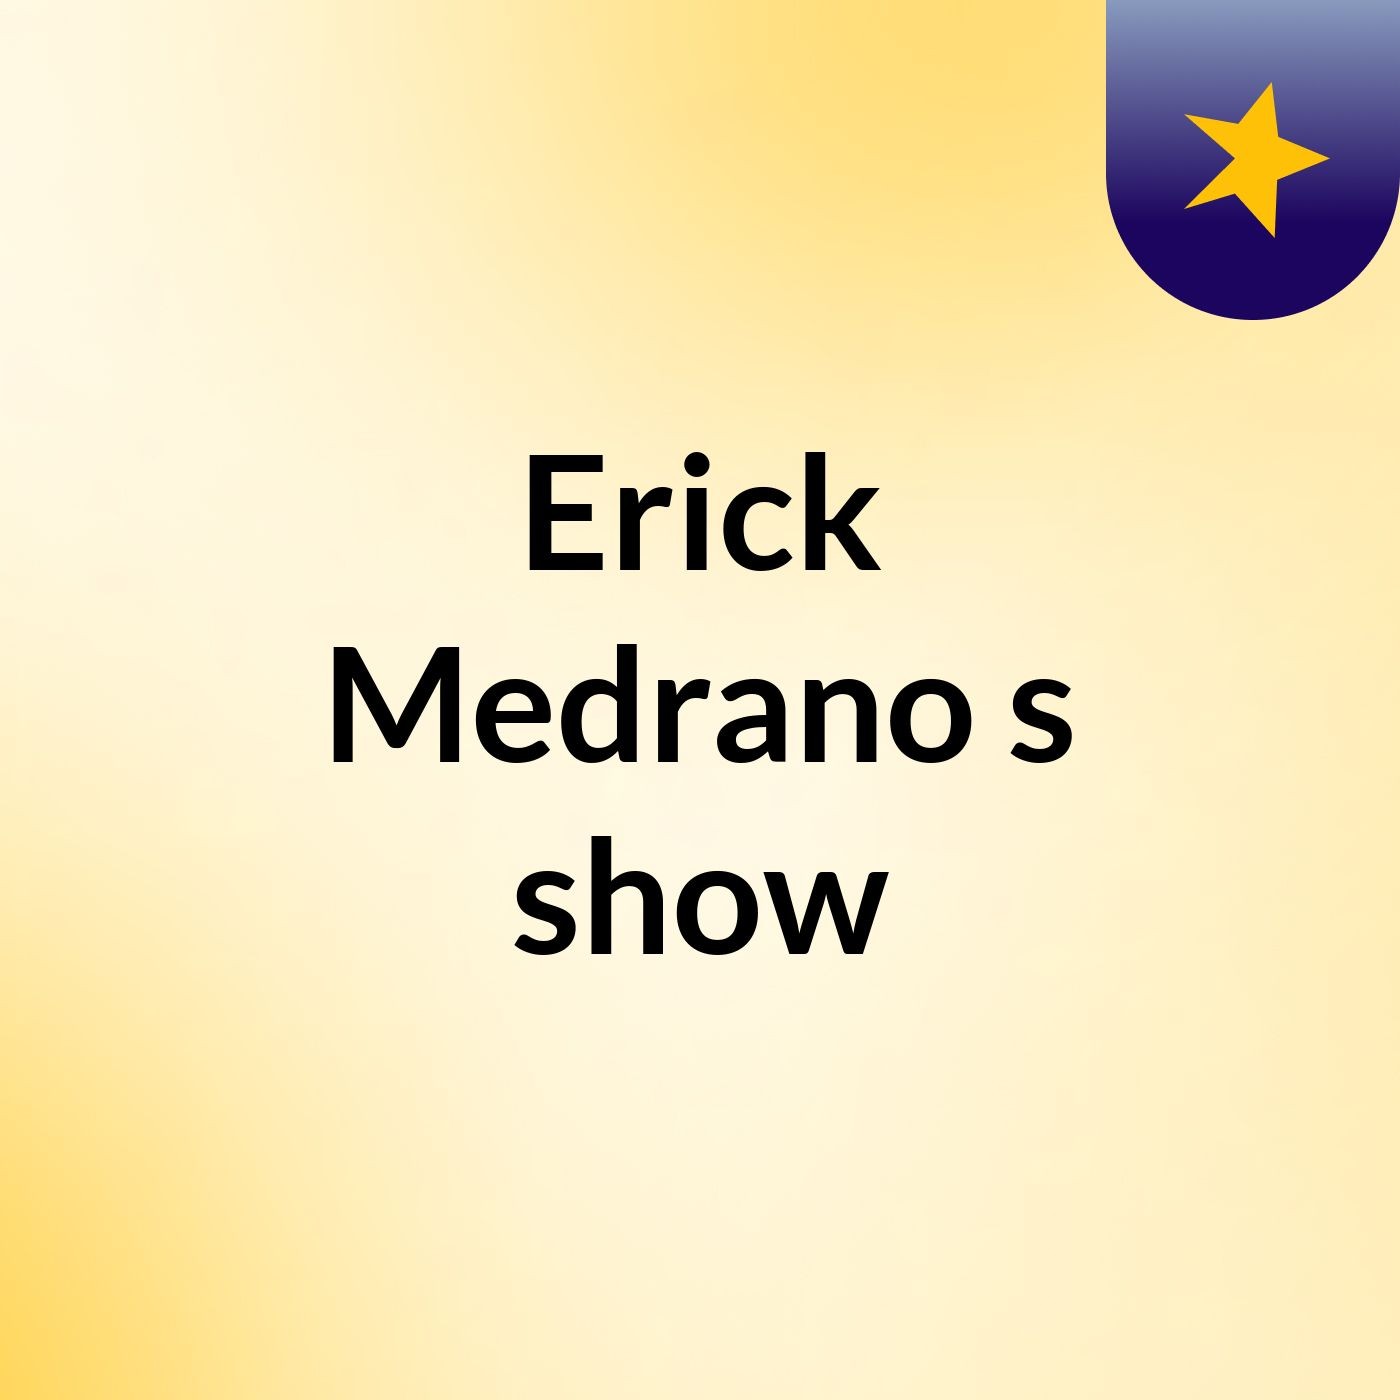 Erick Medrano's show